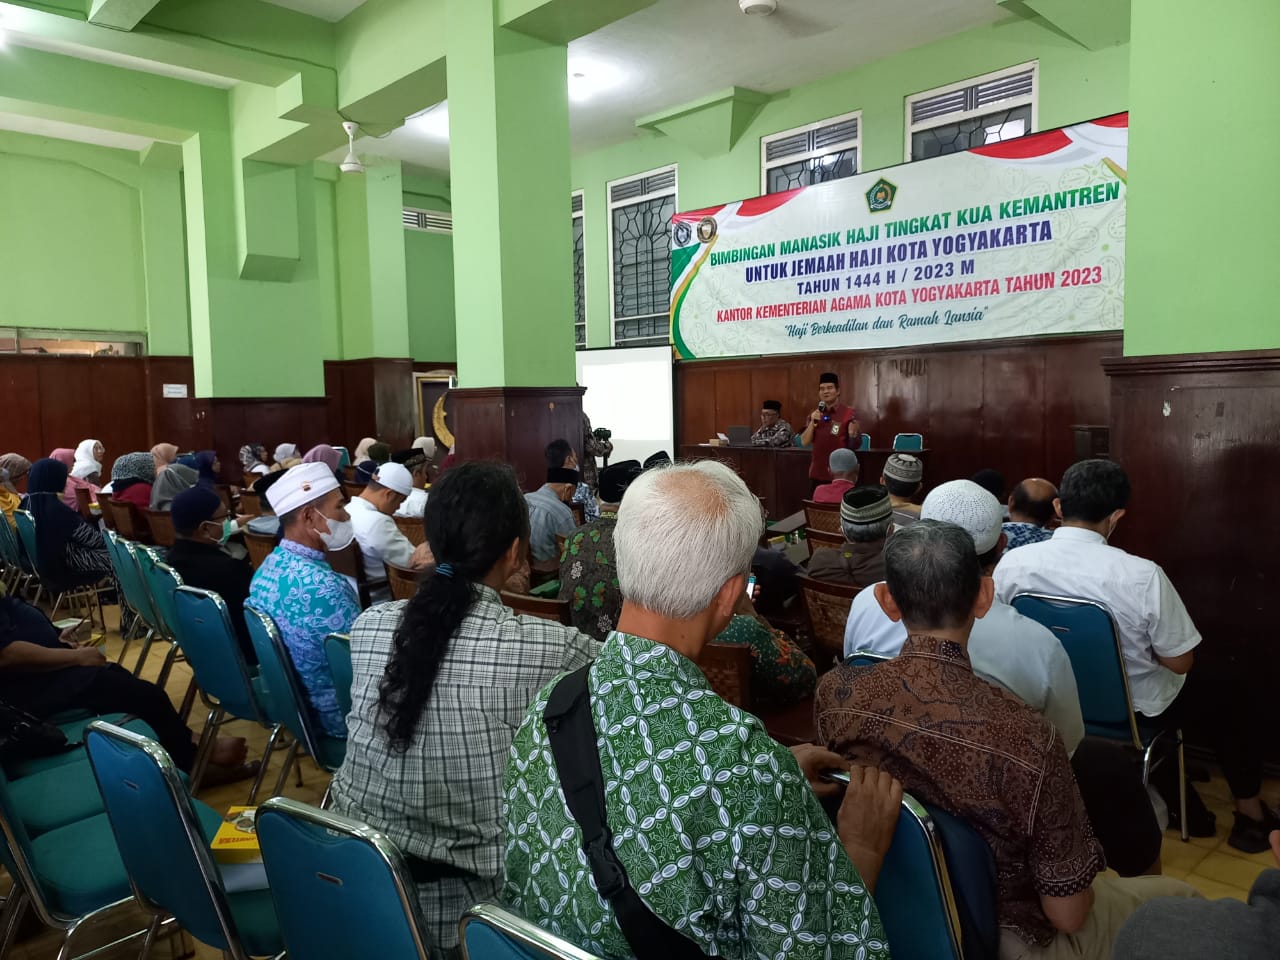 Jamaah Calon Haji Kota Yogyakarta mengikuti Bimbingan Manasik Haji tahun 2023